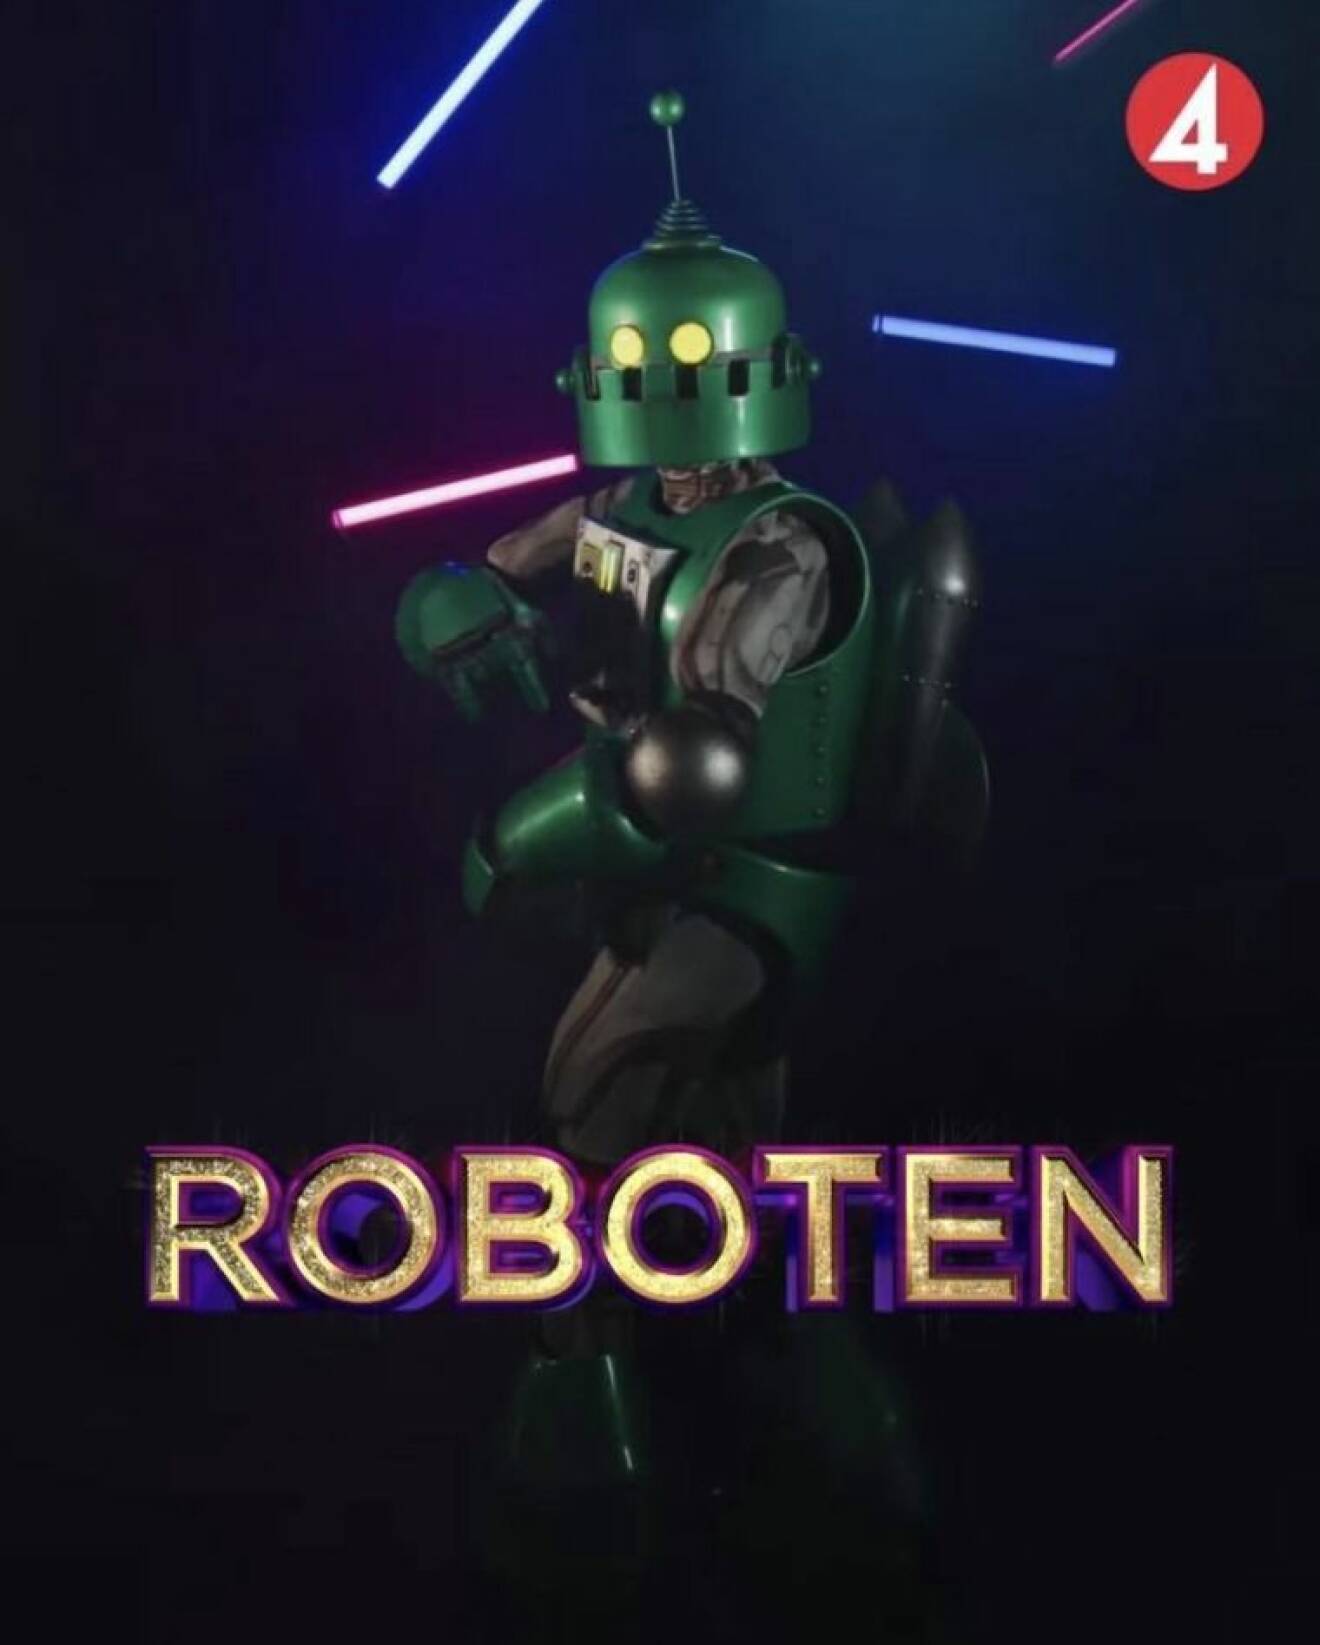 Roboten i Masked singer Sverige